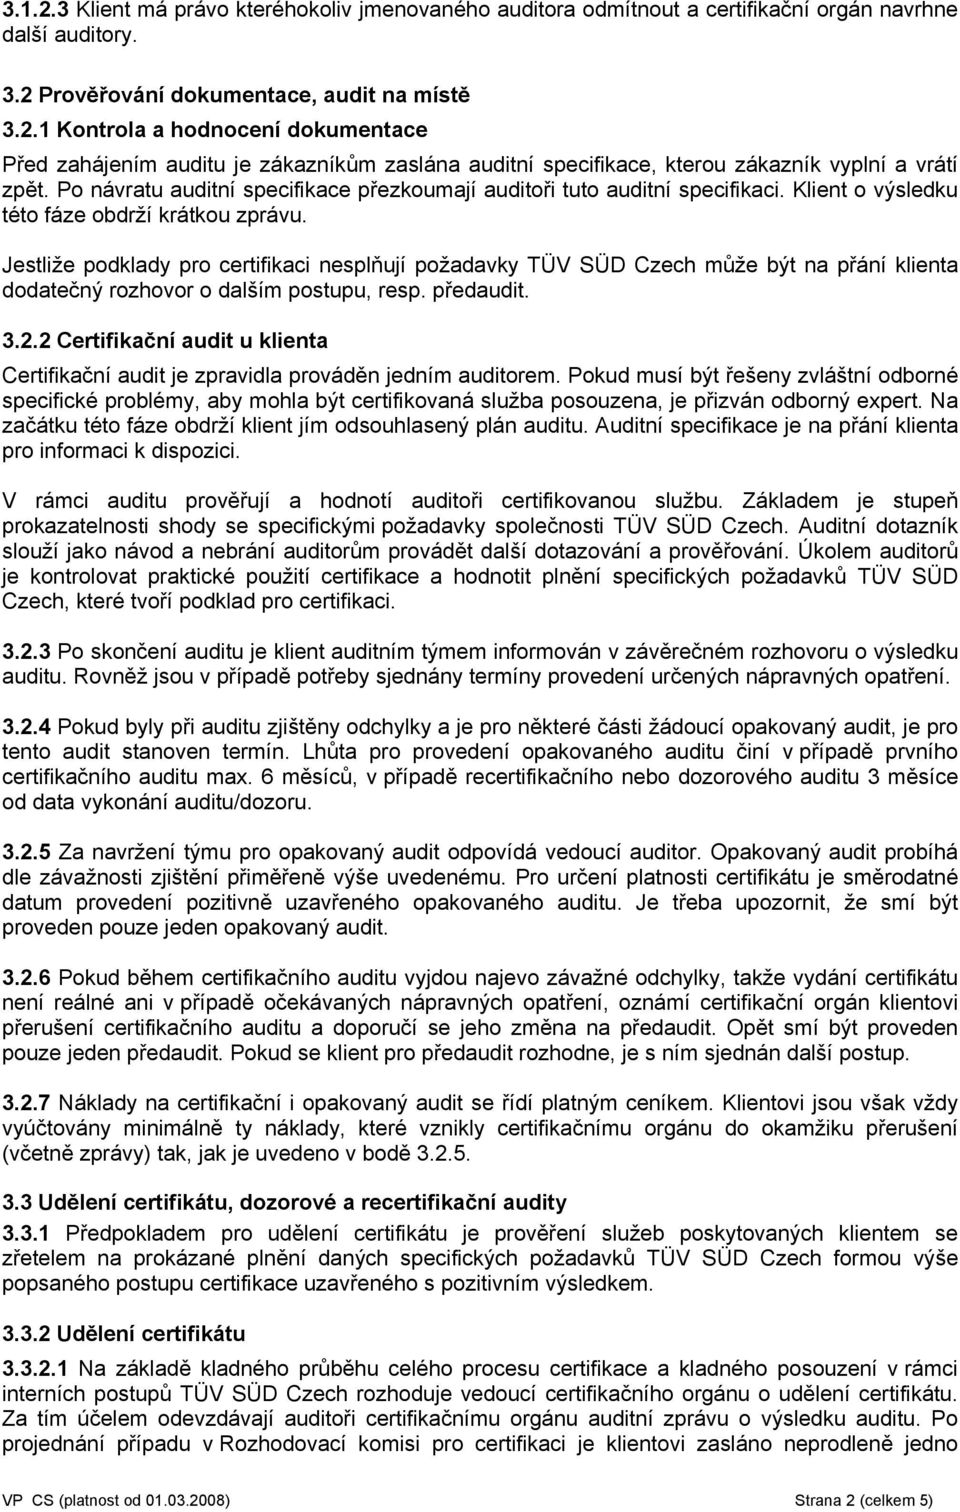 Jestliže podklady pro certifikaci nesplňují požadavky TÜV SÜD Czech může být na přání klienta dodatečný rozhovor o dalším postupu, resp. předaudit. 3.2.